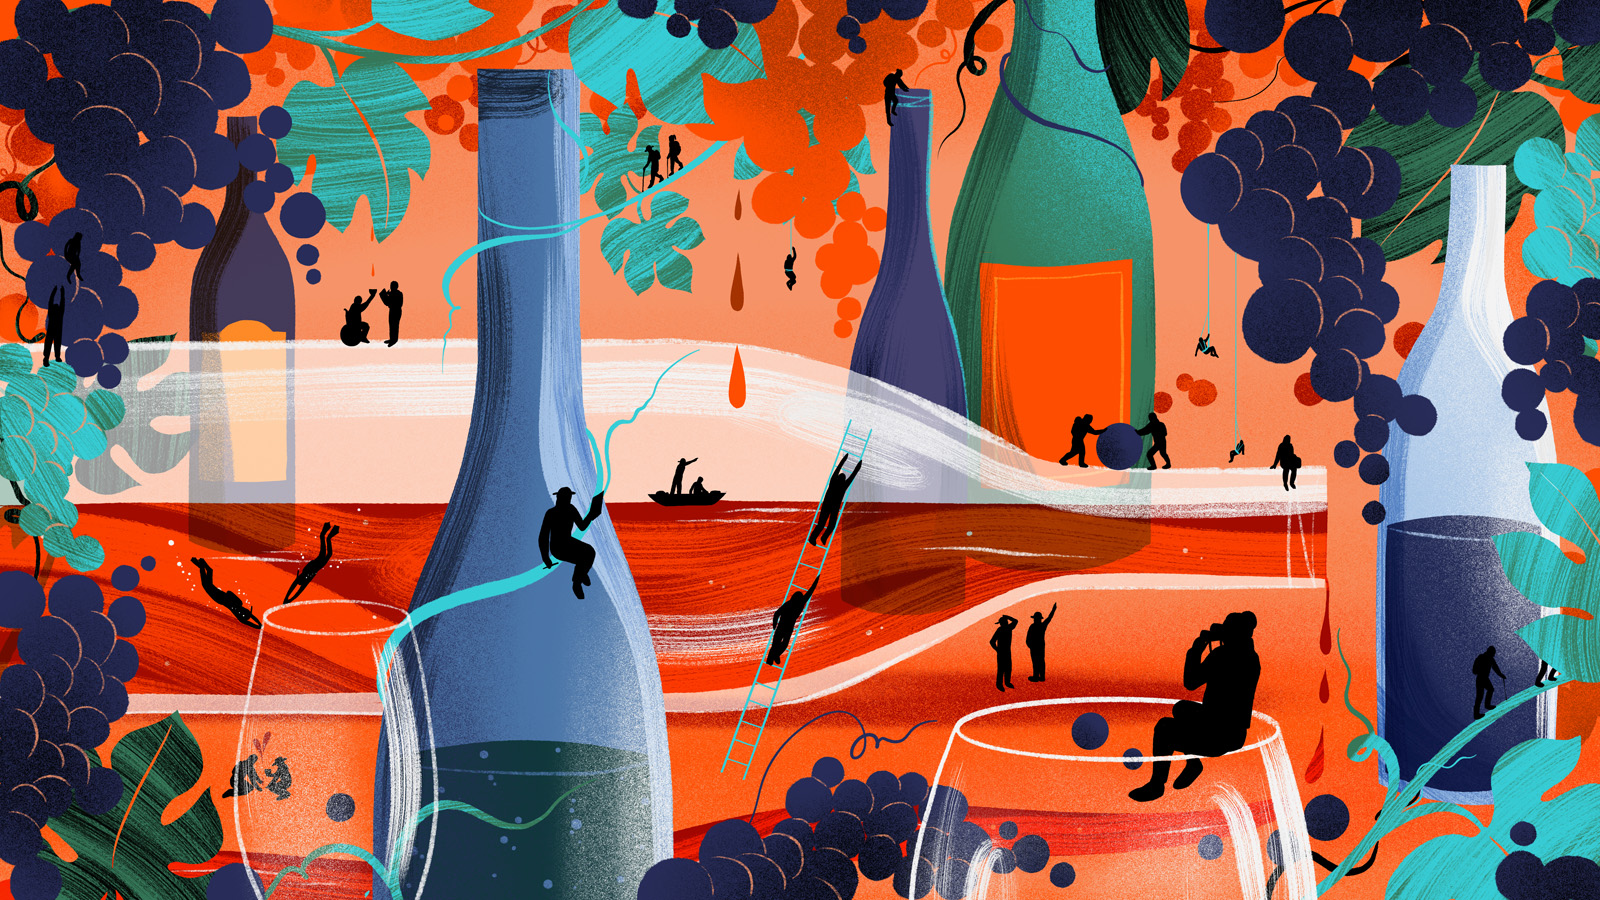 Illustration of a landscape made of wine bottles